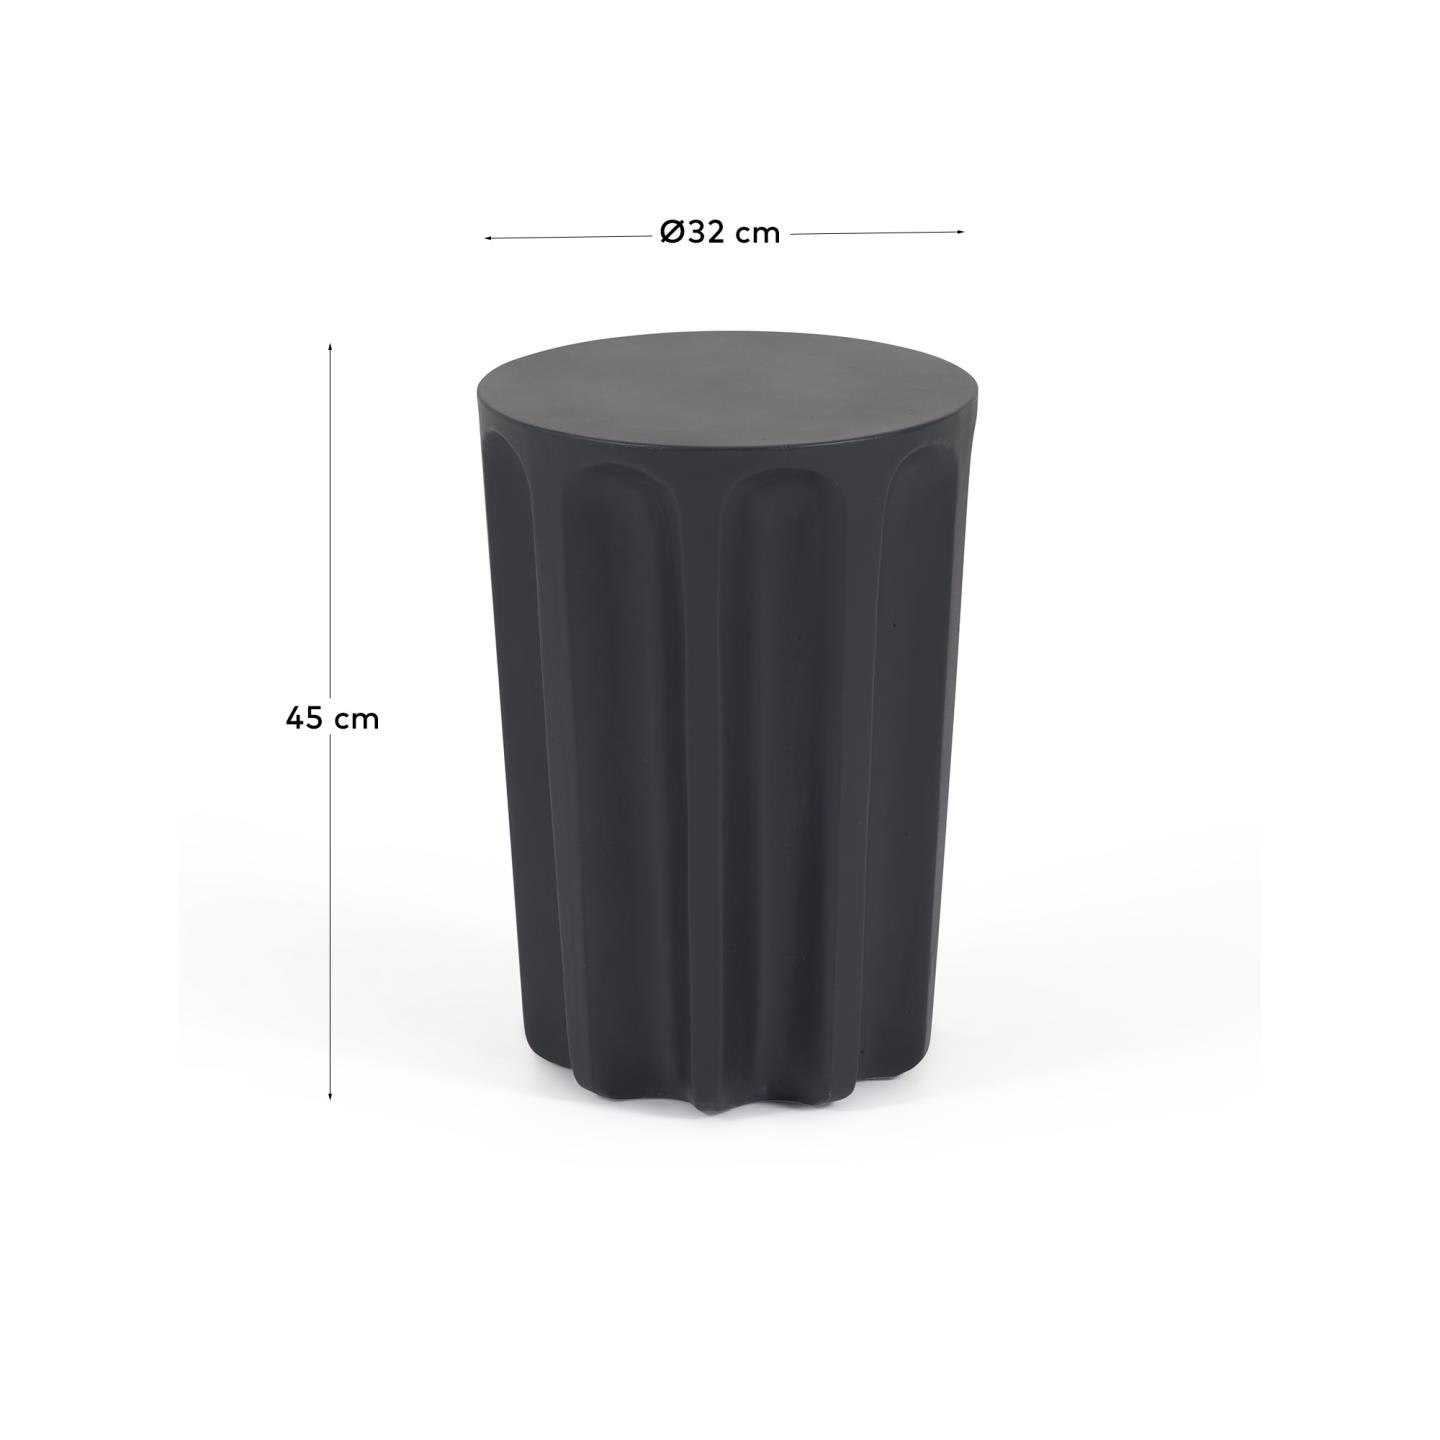 빌란드라 콘크리트 원형 블랙 야외 사이드 테이블 Ø 32cm - 크기